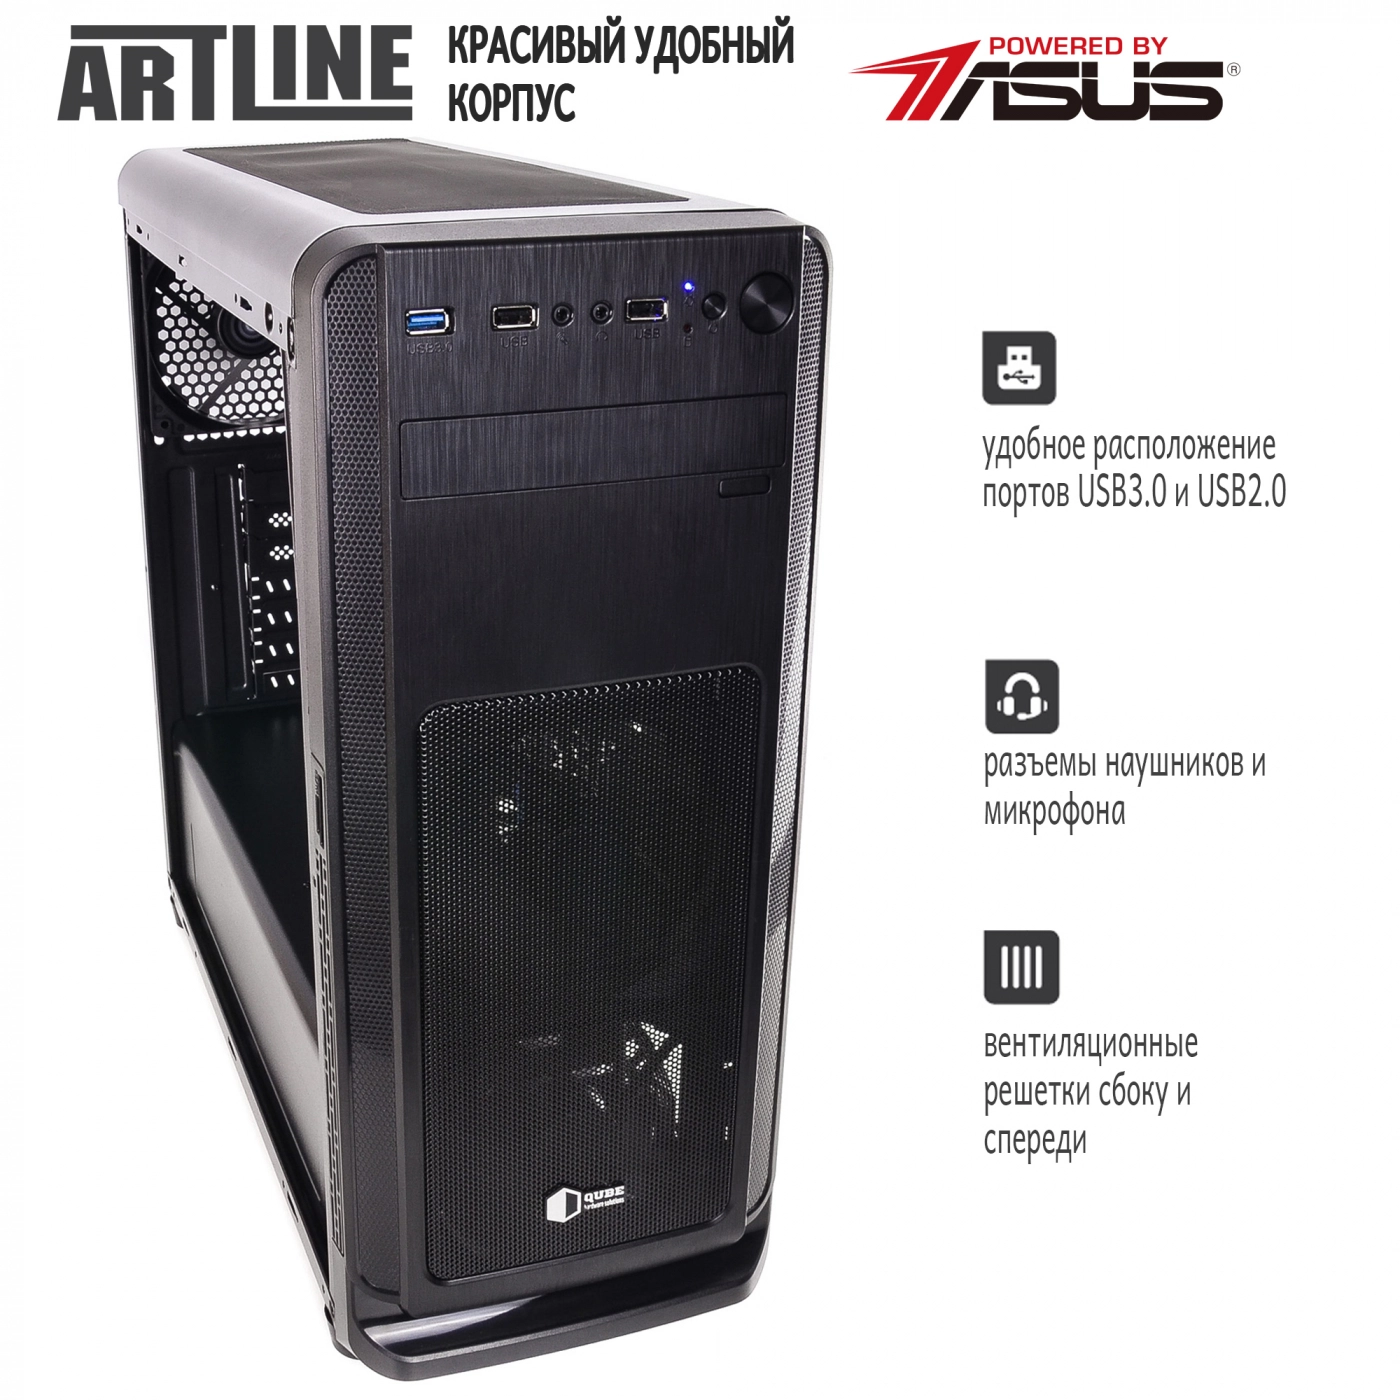 Купить Сервер ARTLINE Business T17v14 - фото 4